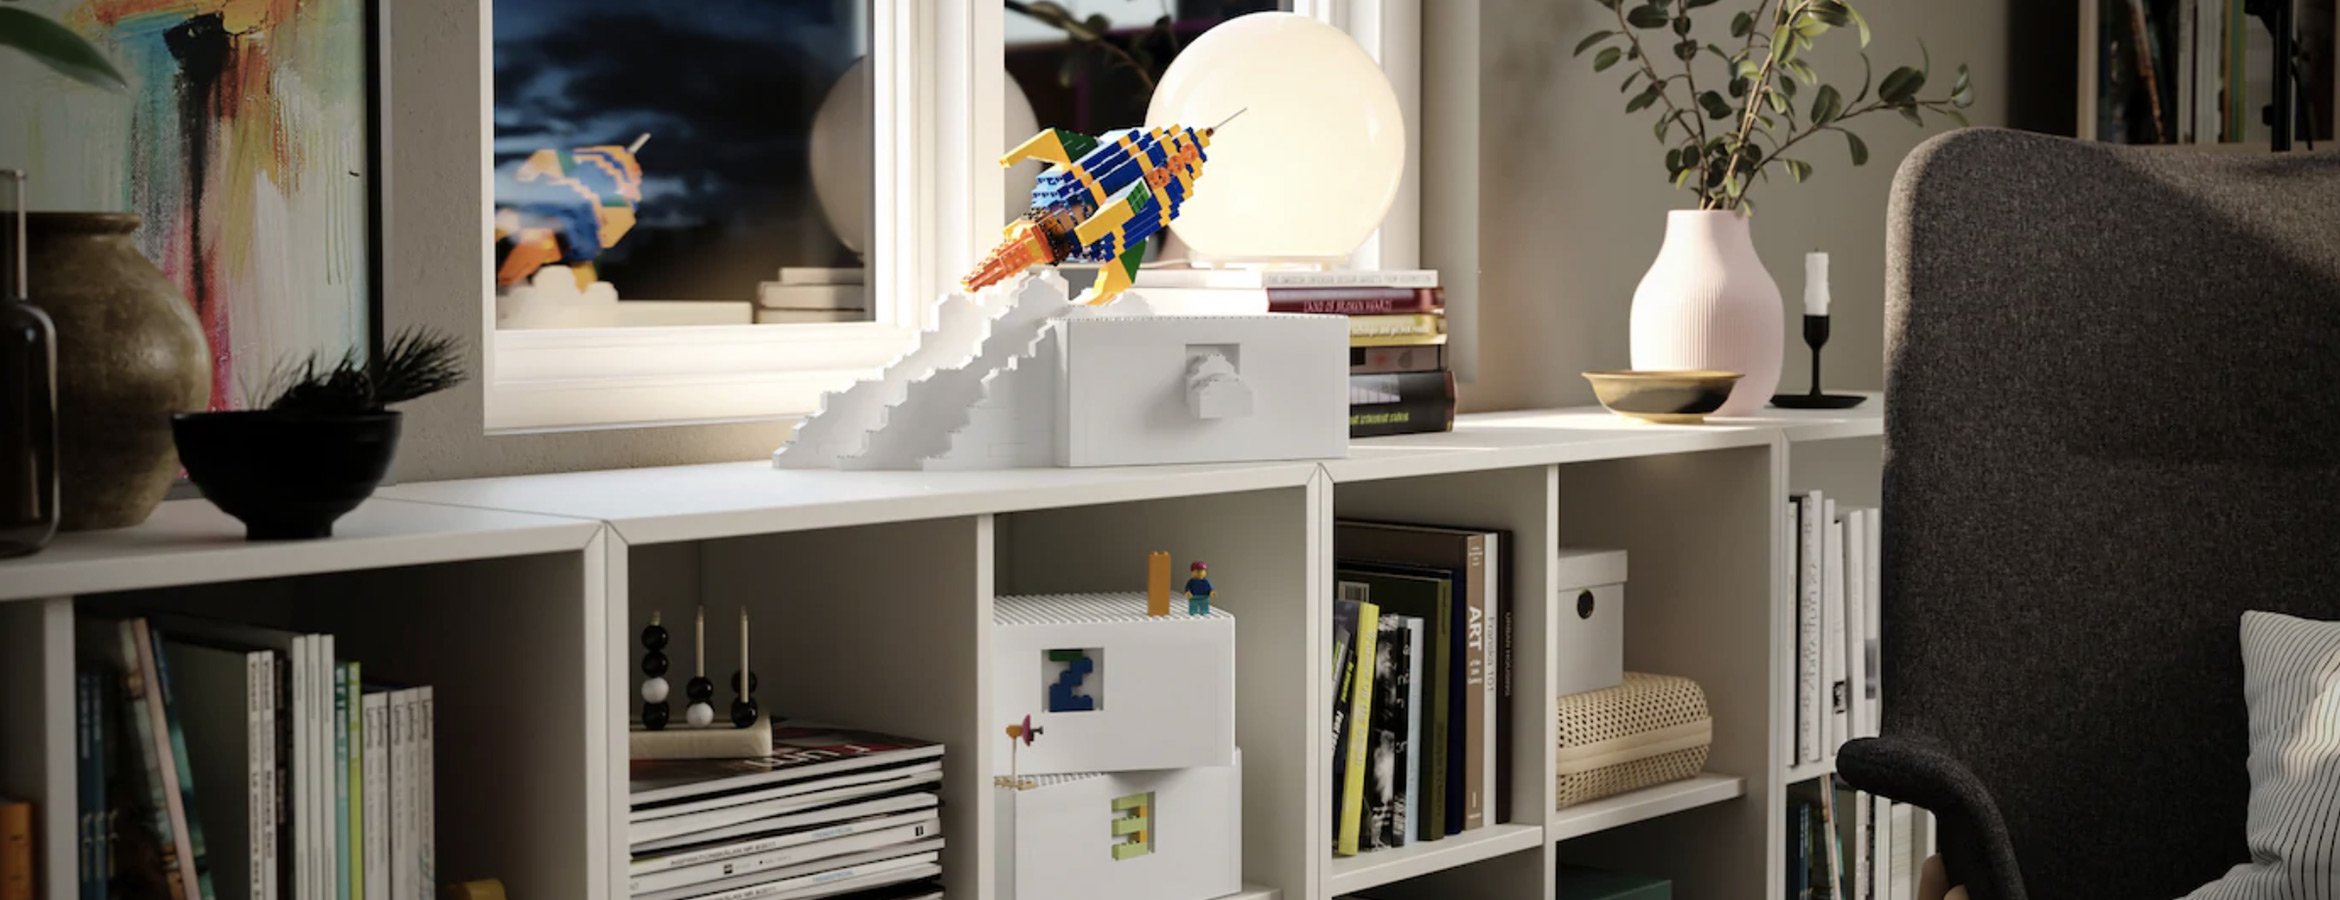 Ikea Et Lego Concoivent La Boite De Rangement Revee